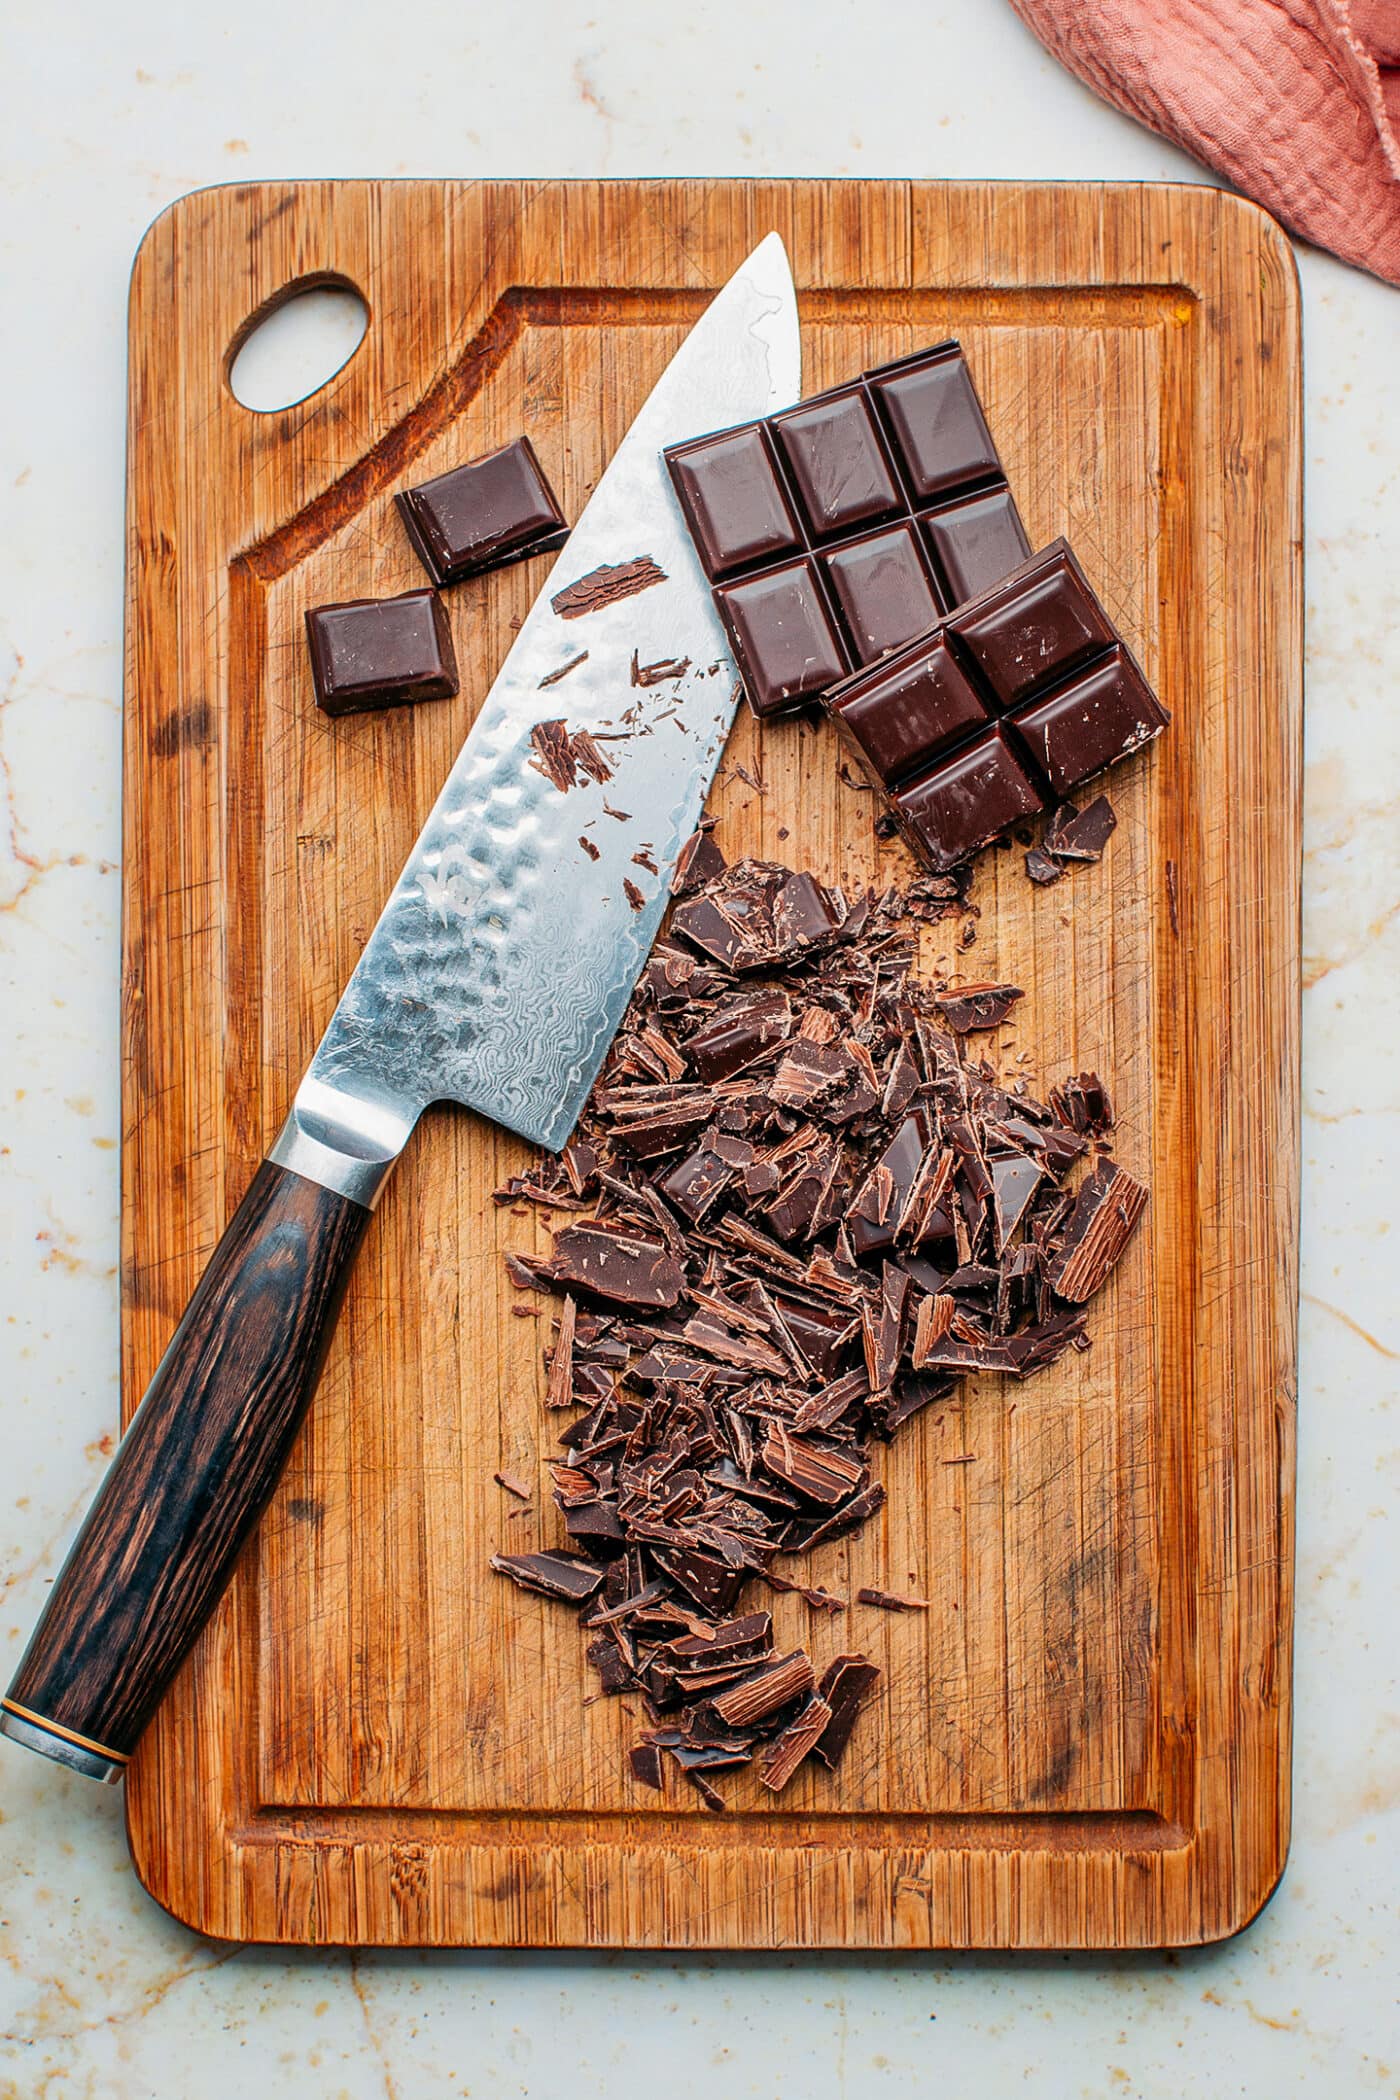 Chopped dark chocolate on a cutting board.